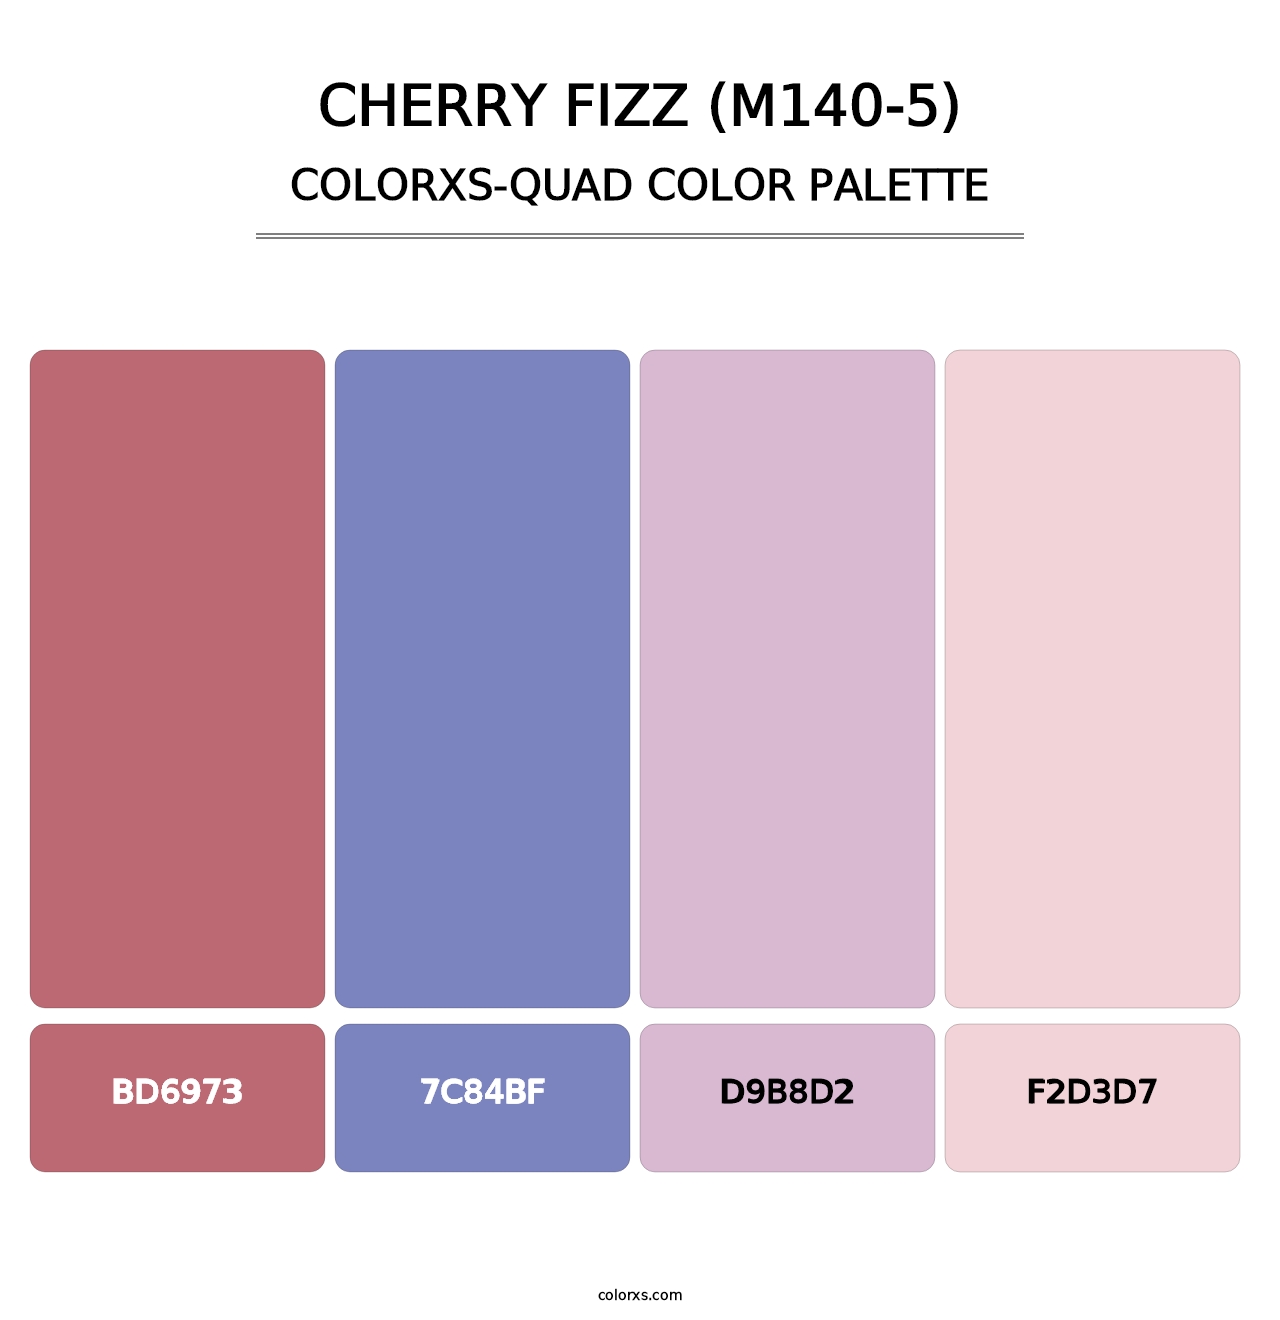 Cherry Fizz (M140-5) - Colorxs Quad Palette